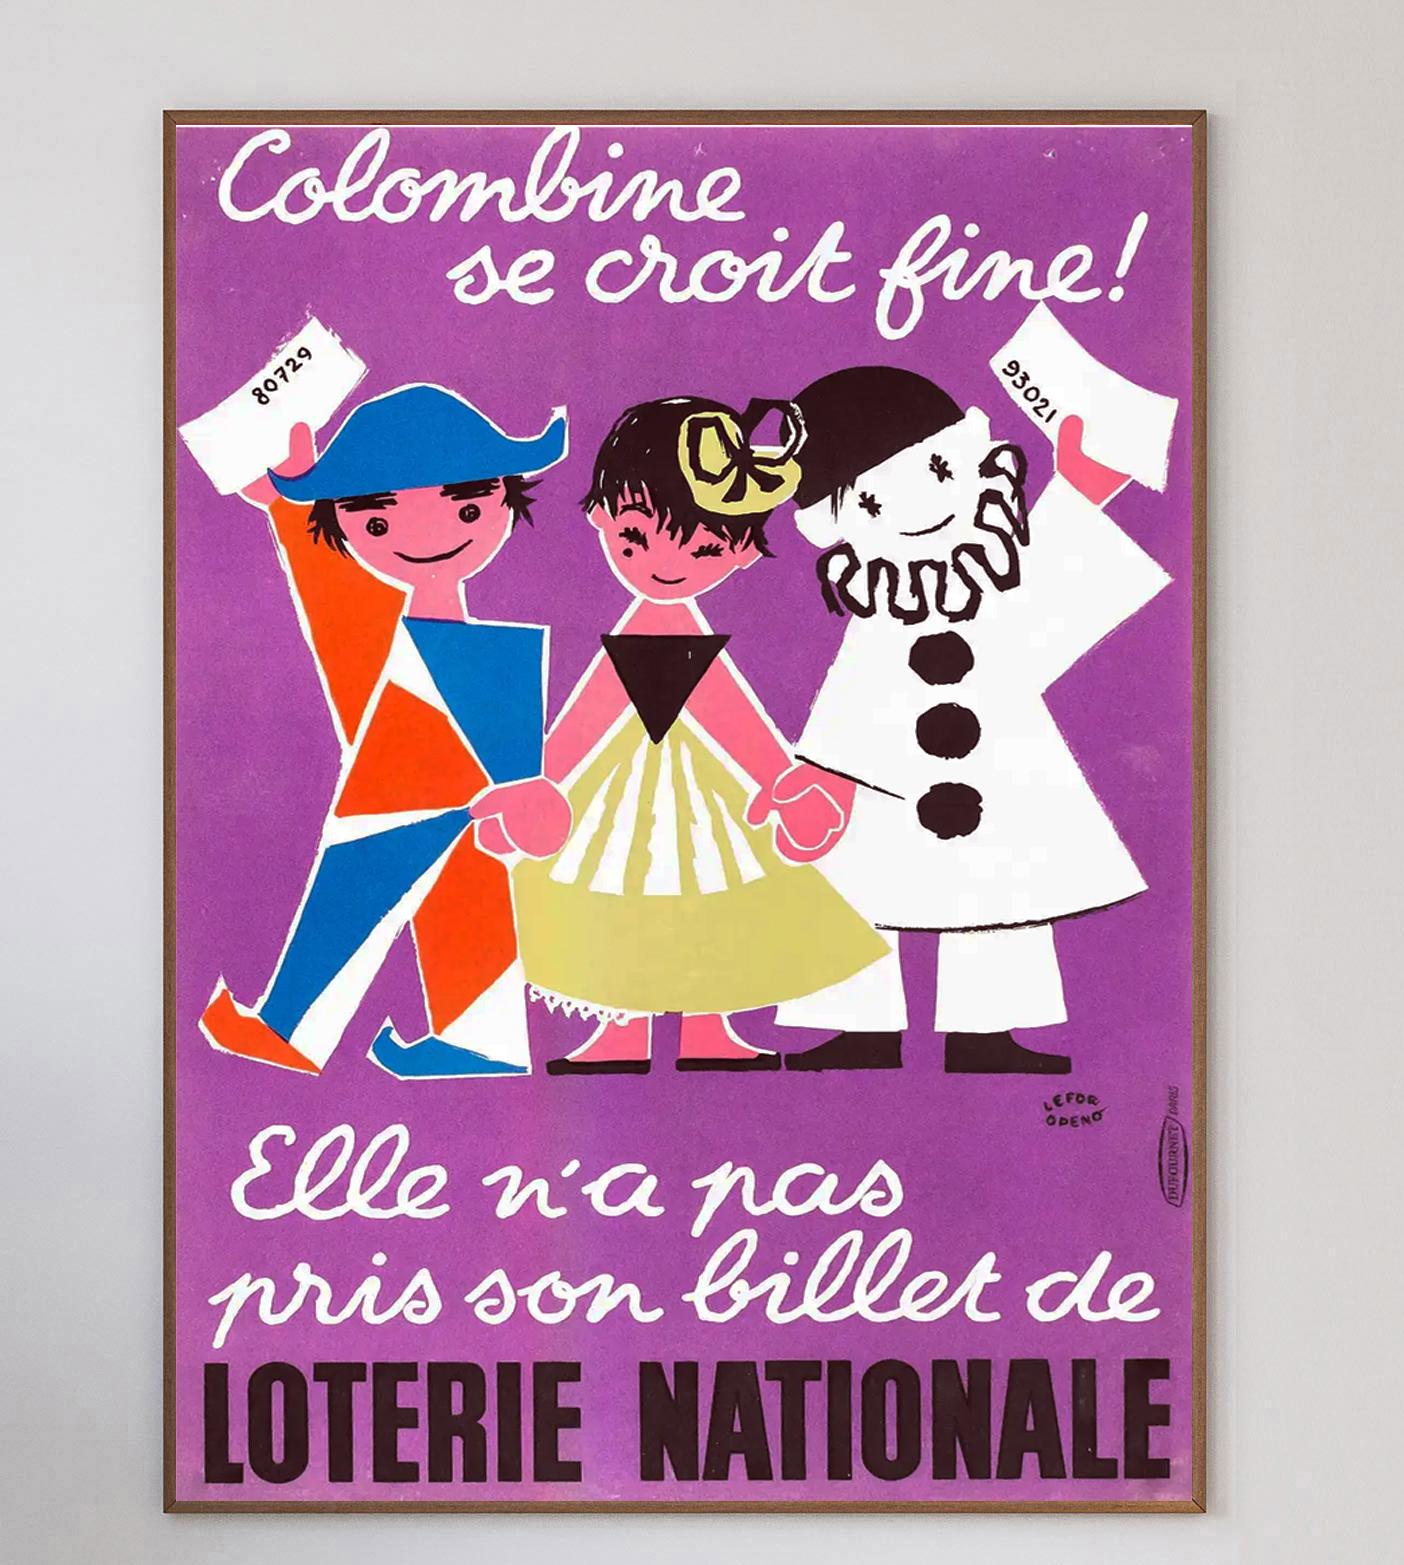 Dieses schöne und farbenfrohe Plakat stammt aus dem Jahr 1957 und wirbt für die Loterie Nationale (französische Nationallotterie). Das Plakat mit der Aufschrift 